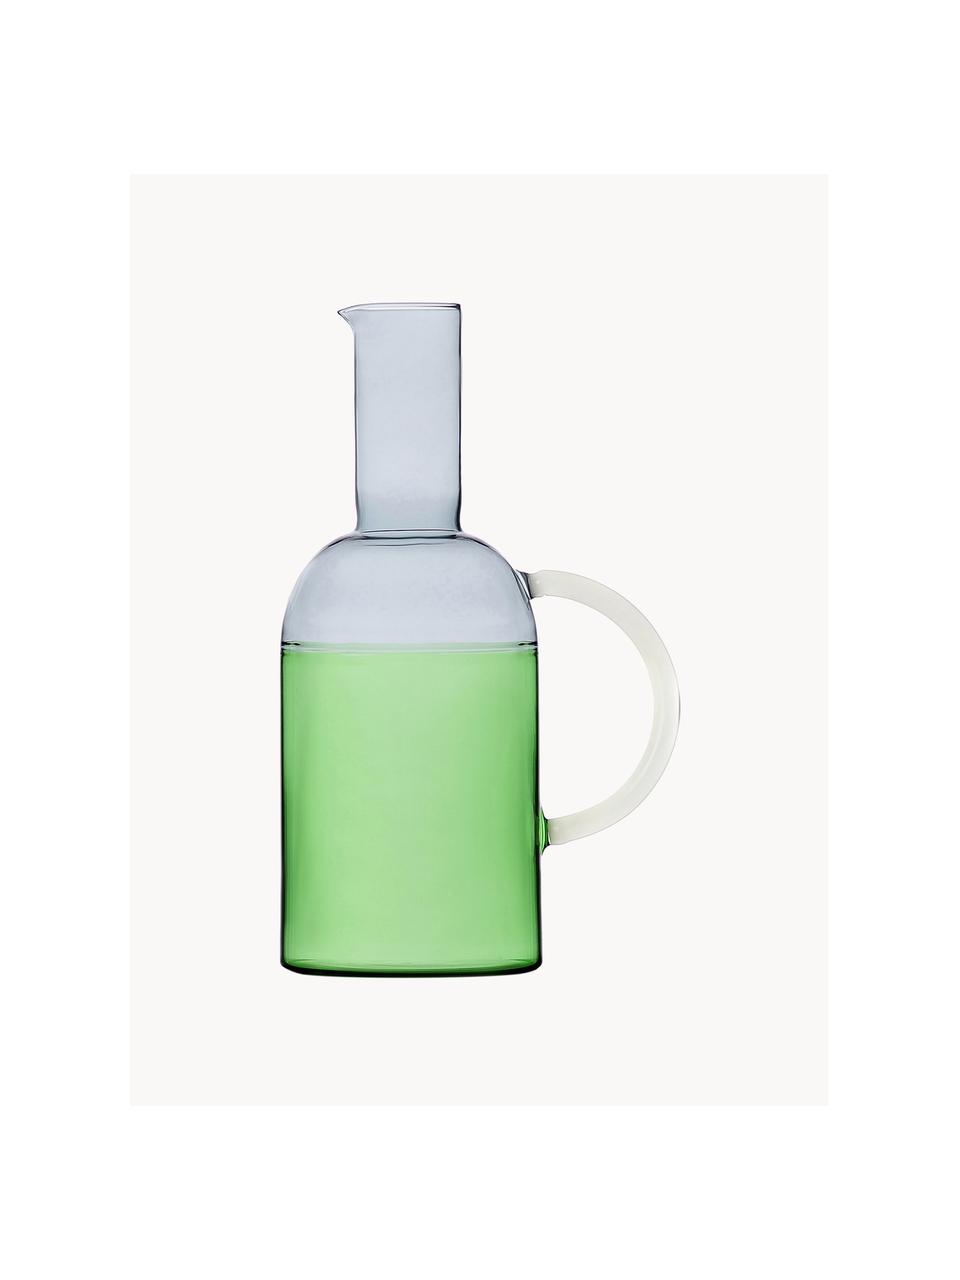 Pichet à eau artisanal Tequila Sunrise, 1,8 L, Verre borosilicate, Gris clair, vert clair, blanc, 1,8 L